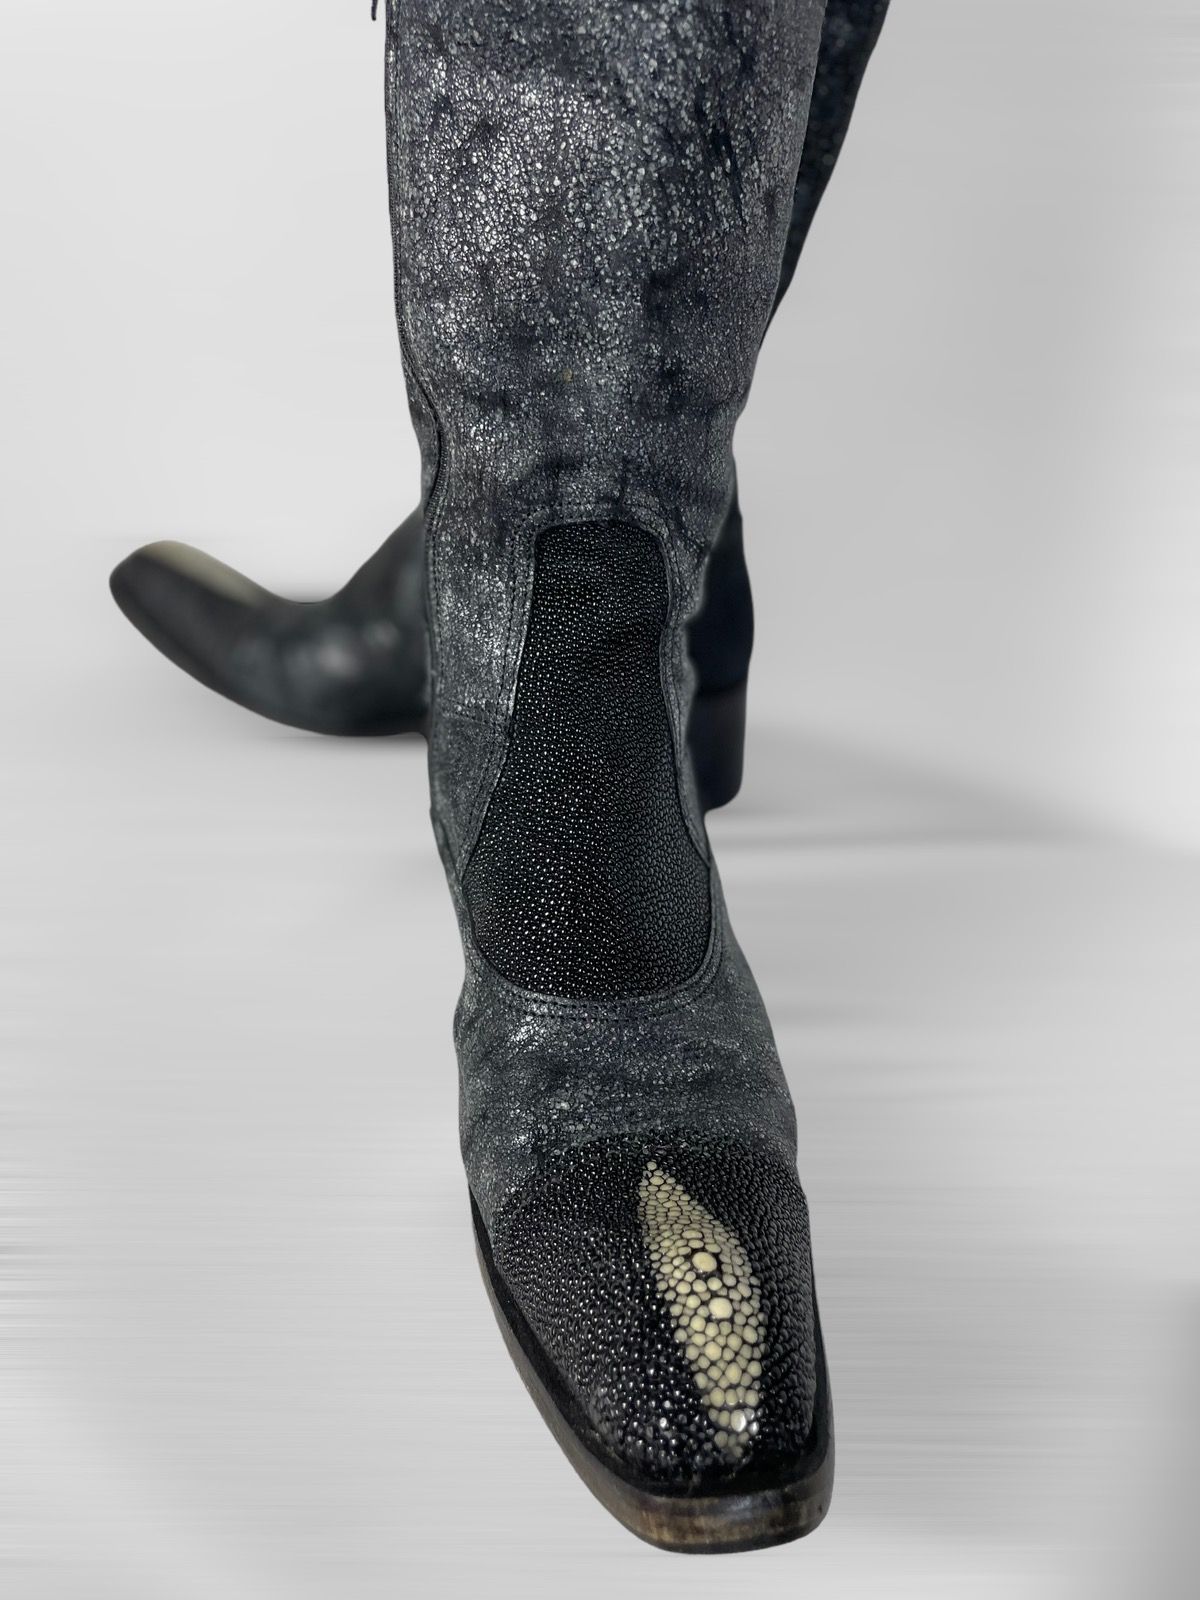 Gianni Barbato Vintage Gianni Barbato cowboy western Boots genuine leather Size US 6 / IT 36 - 5 Thumbnail